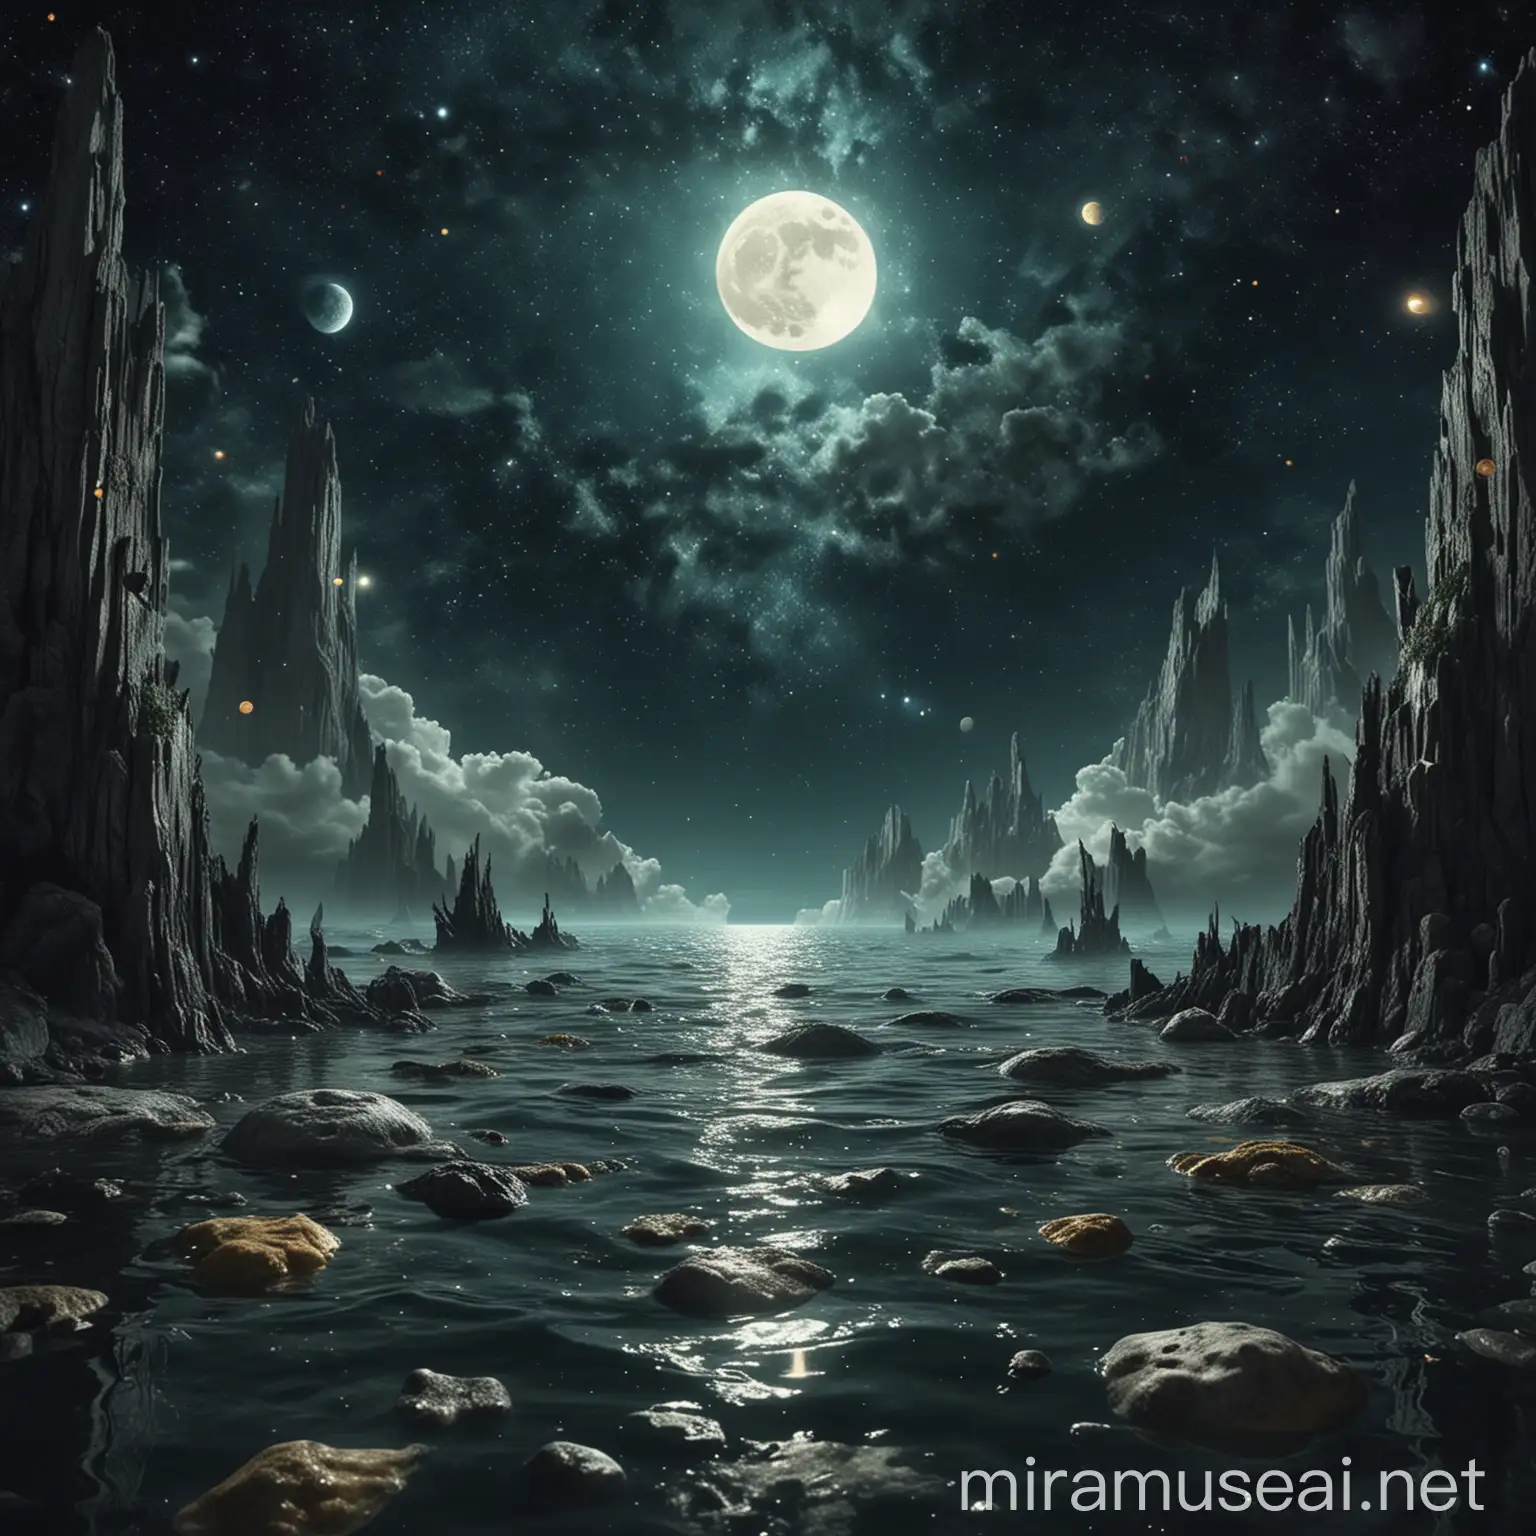 Surreal Celestial Beings in Aquatic Moonlit Scene